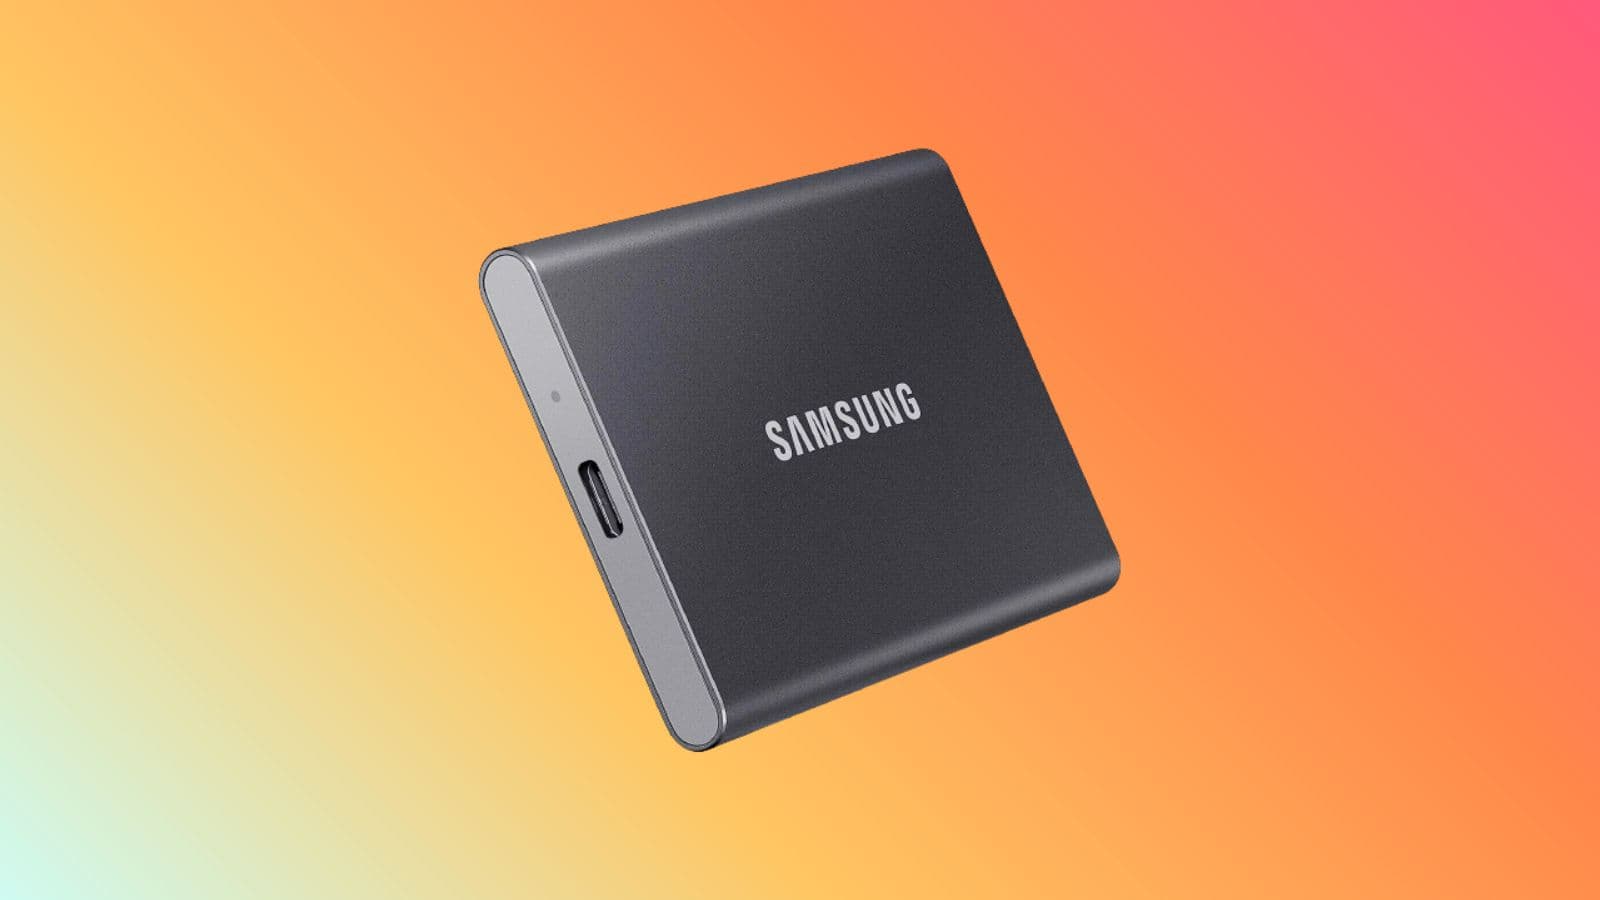 SSD 4 To - Achat Disque SSD au meilleur prix